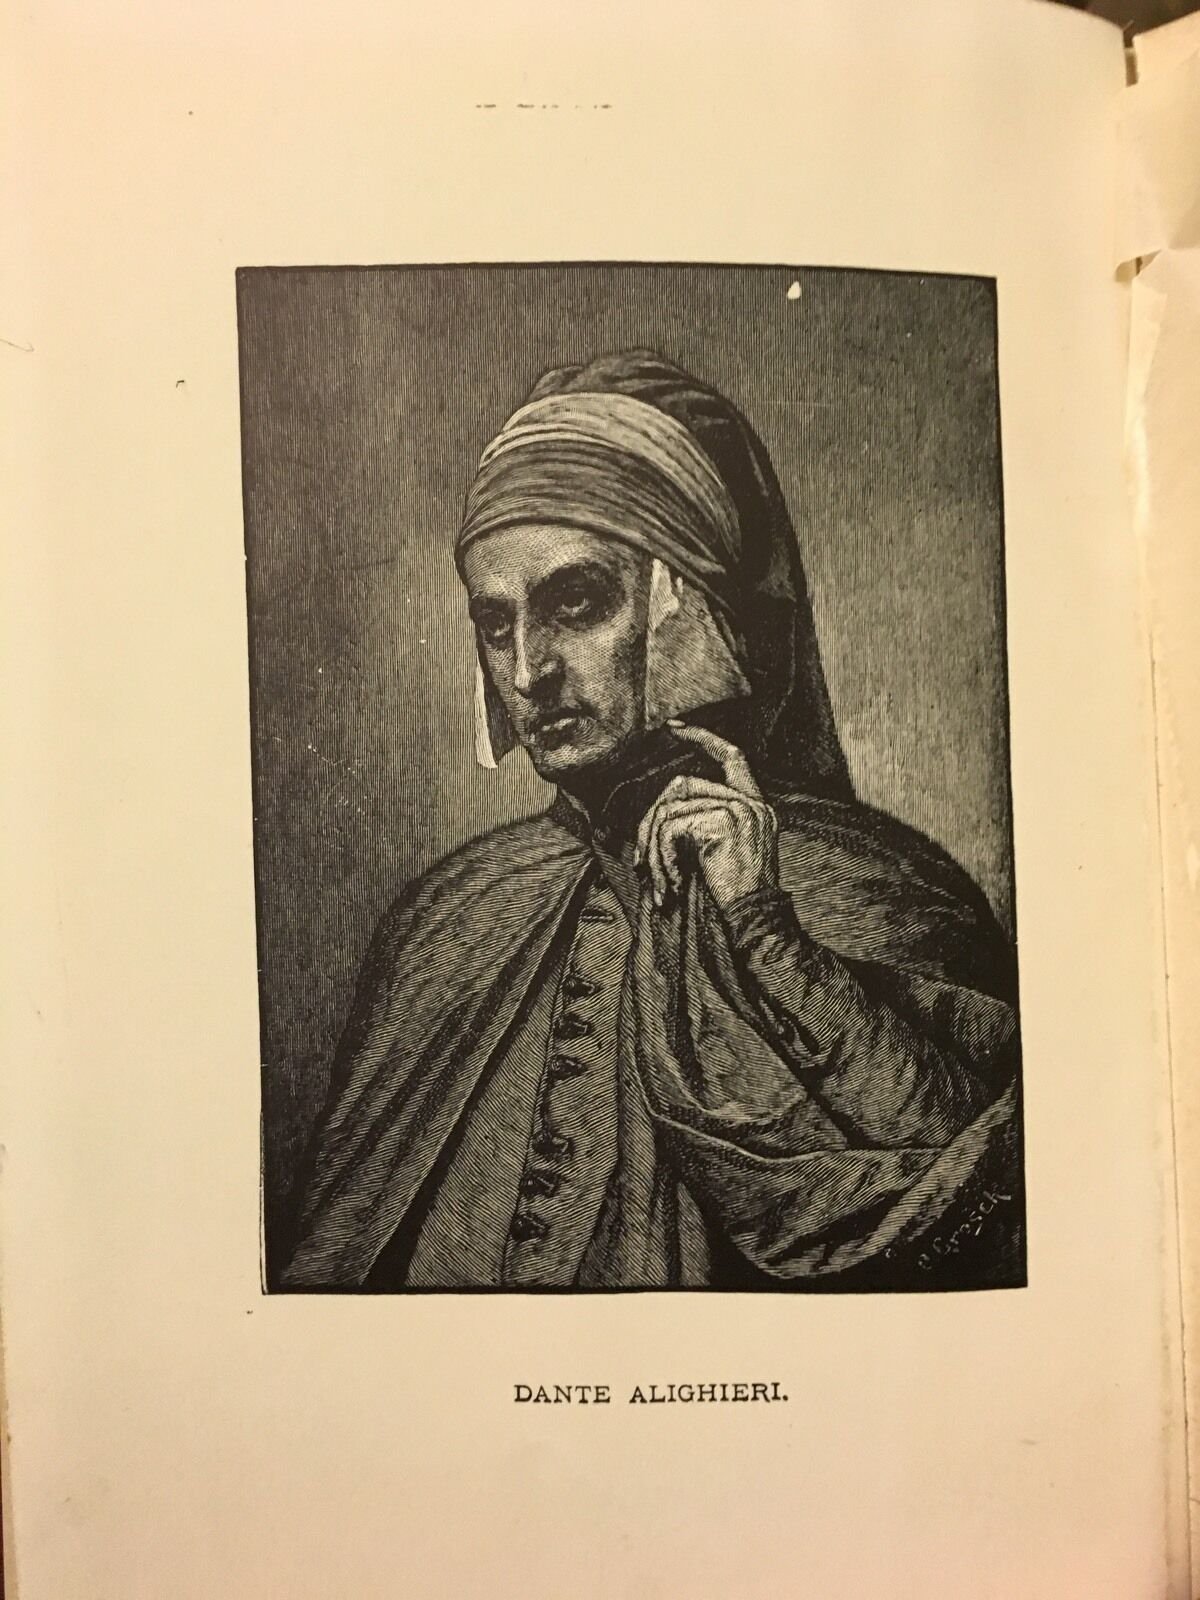 ALIGHIERI, Dante "The Divine Comedy" [AL Burt, c1900] - Buzz Bookstore